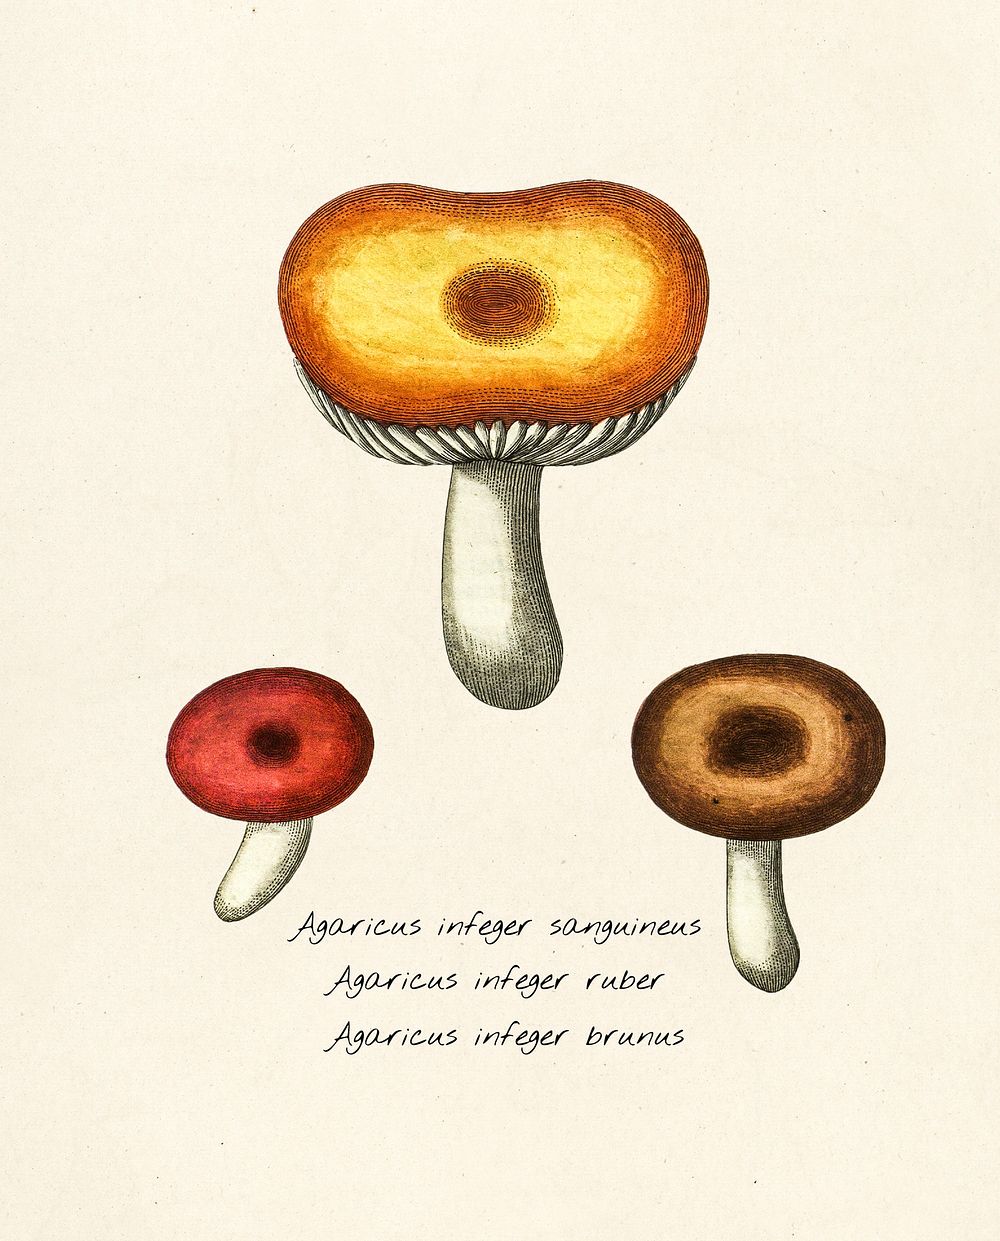 Antique illustration of agaricus infeger sanguineus, agaricus infeger ruber, agaricus infeger brunus, 